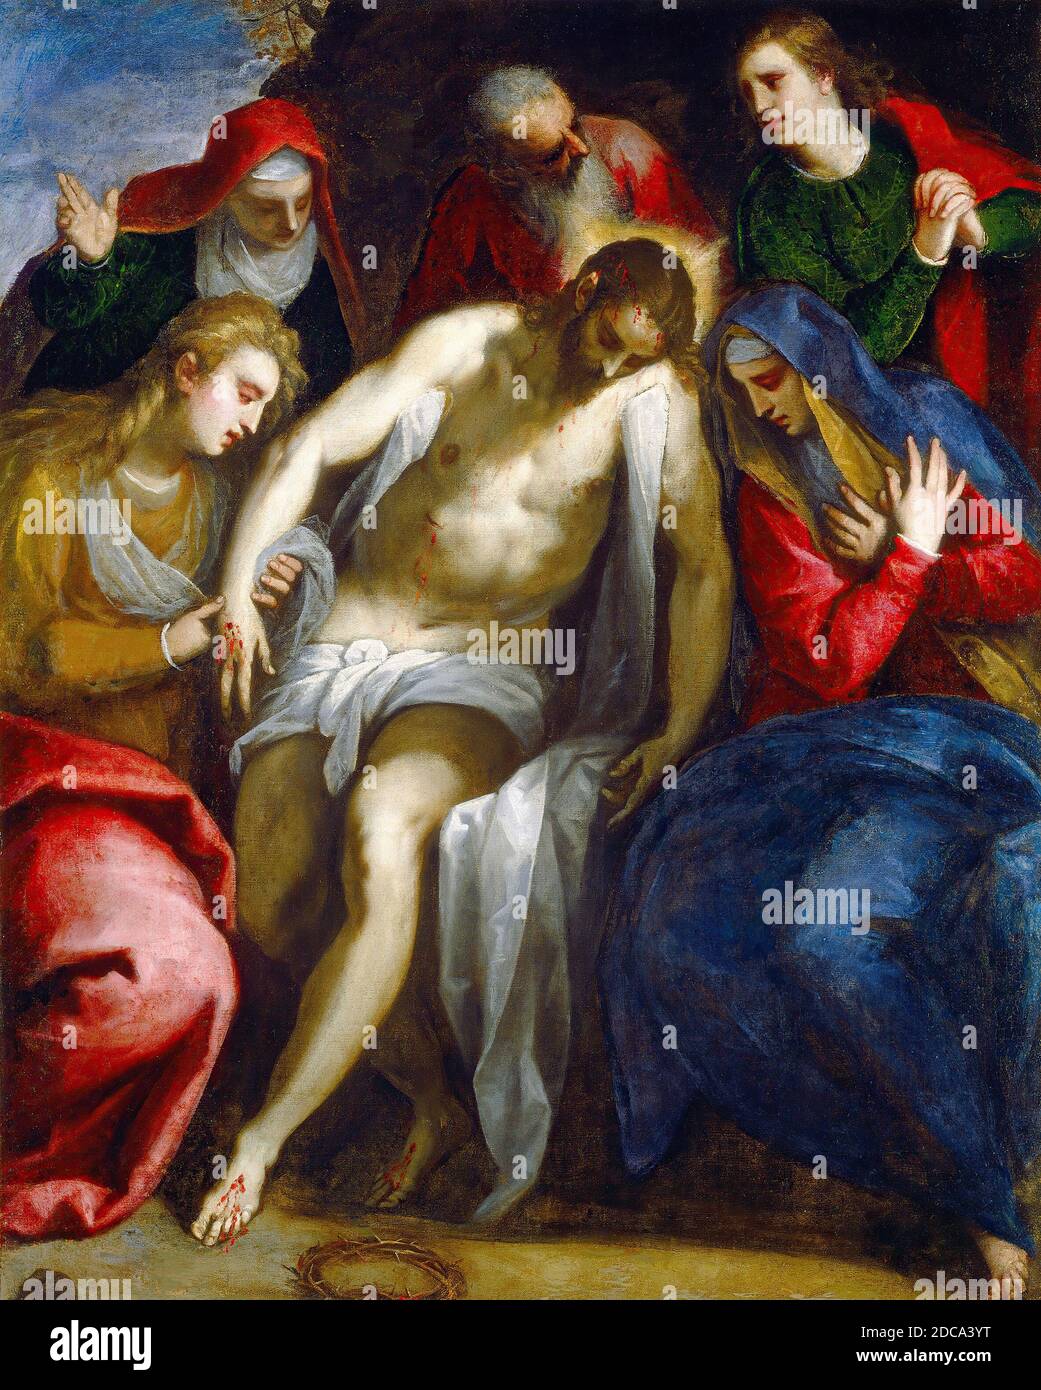 Jacopo Palma il Giovane, (peintre), vénitienne, 1544 ou 1548 - 1628, Lamentation, c. 1620, huile sur toile, hors tout : 134.6 x 109.2 cm (53 x 43 po.), encadré : 158 x 132.9 x 8.1 cm (62 3/16 x 52 5/16 x 3 3/16 po), donné en mémoire de William E. Suida par Bertina Suida Manning et Robert L. Manning, en l'honneur du 50e anniversaire de la Galerie nationale d'art Banque D'Images